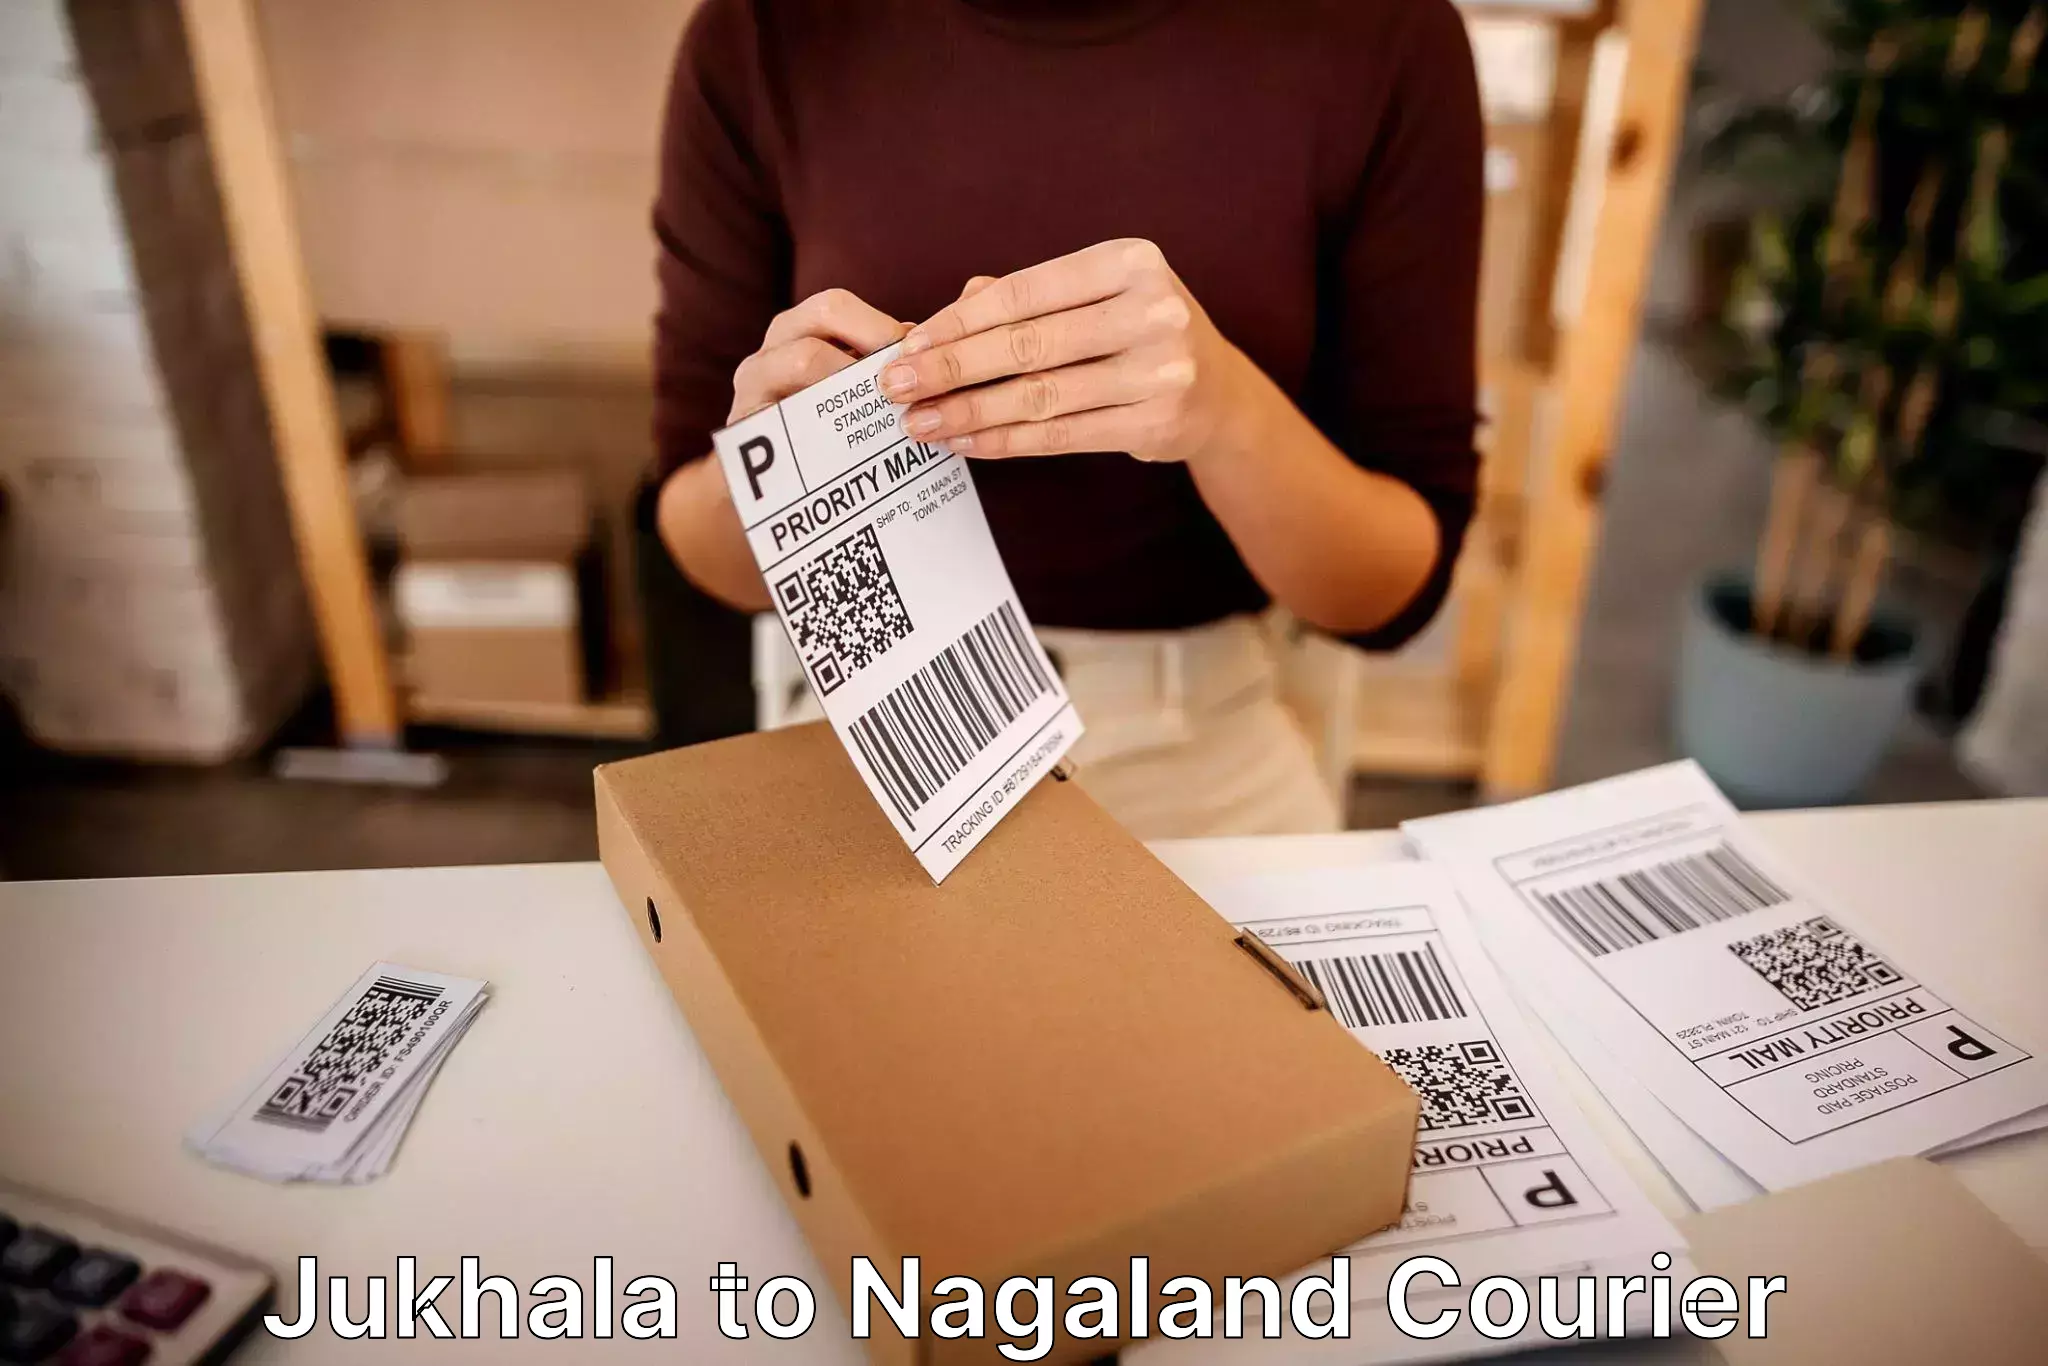 Furniture shipping services Jukhala to NIT Nagaland